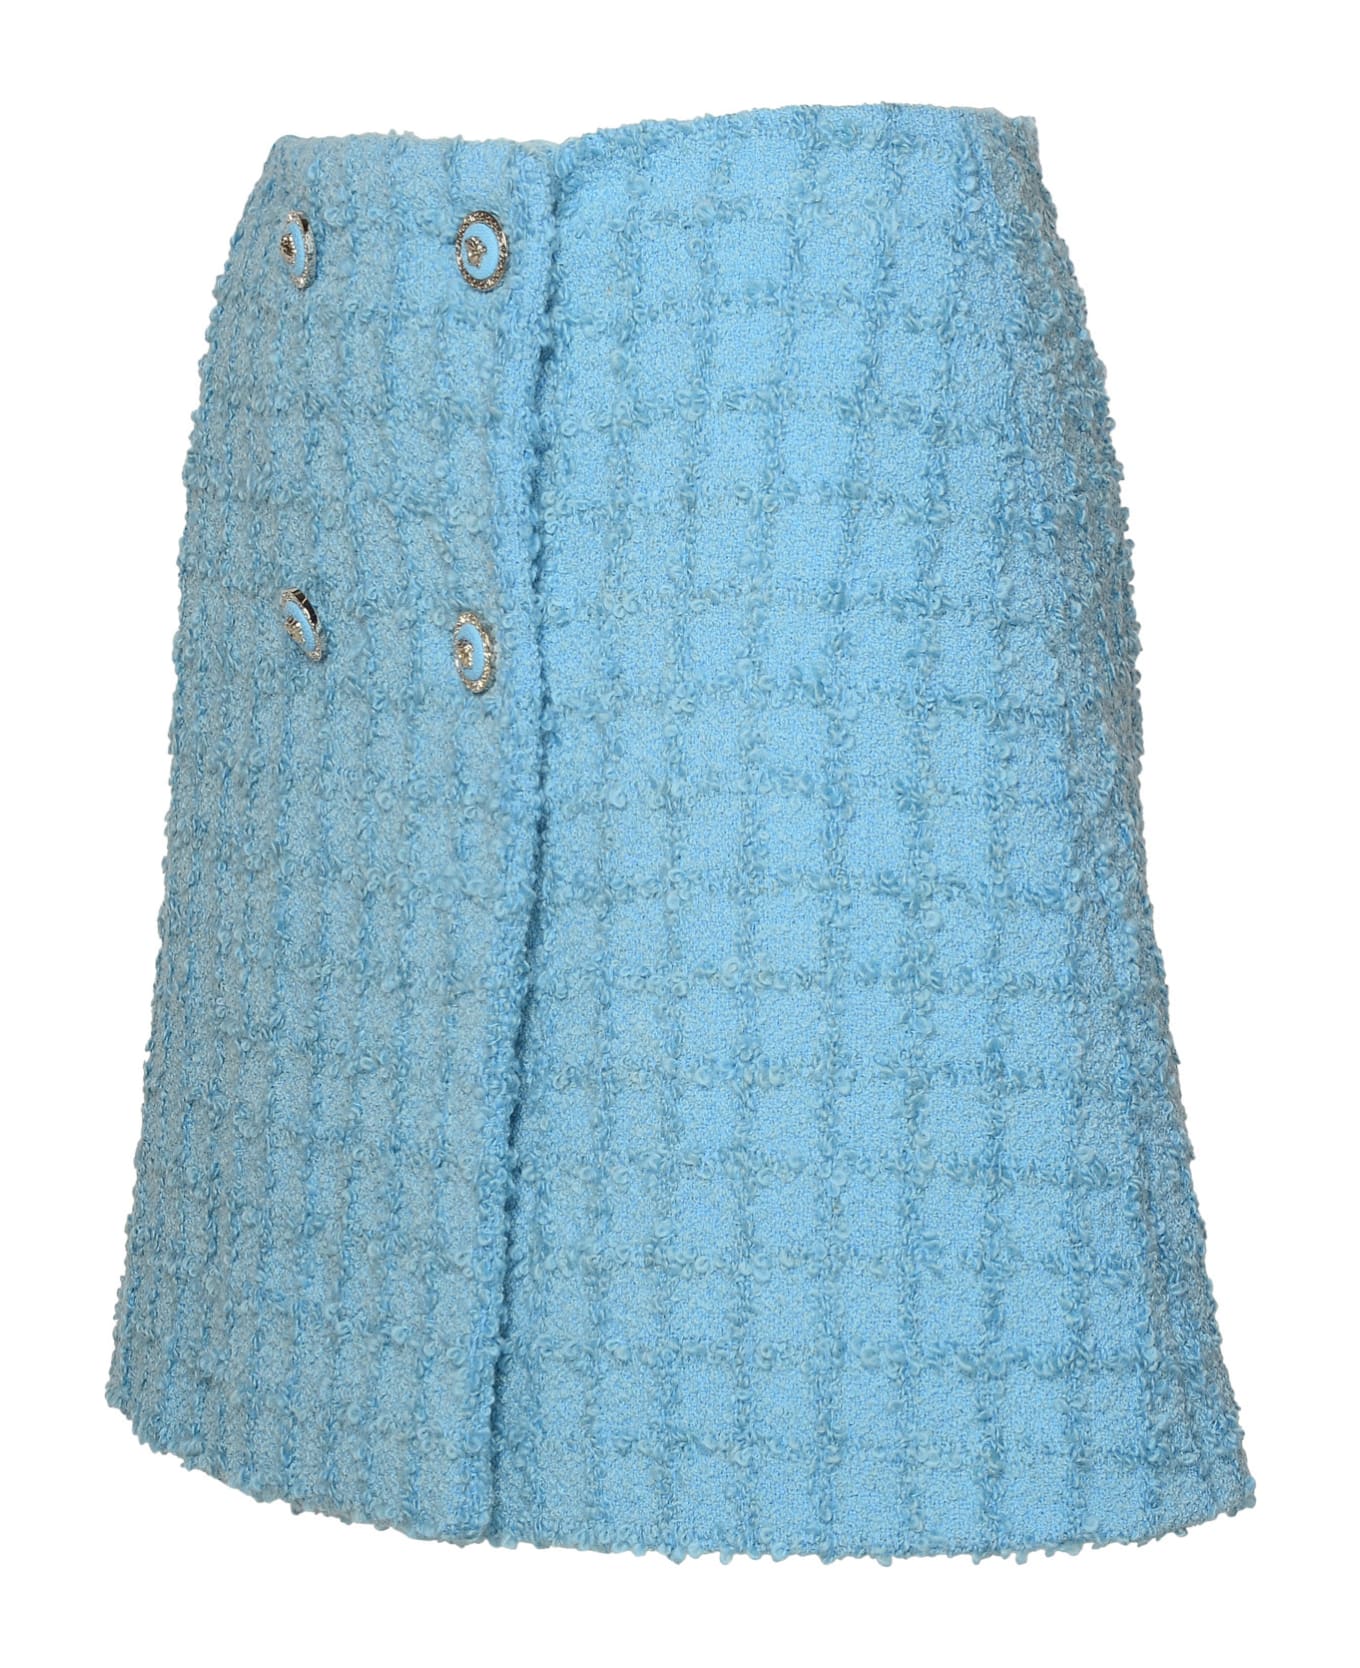 Versace Skirt In Light Blue Virgin Wool Blend - Light Blue スカート